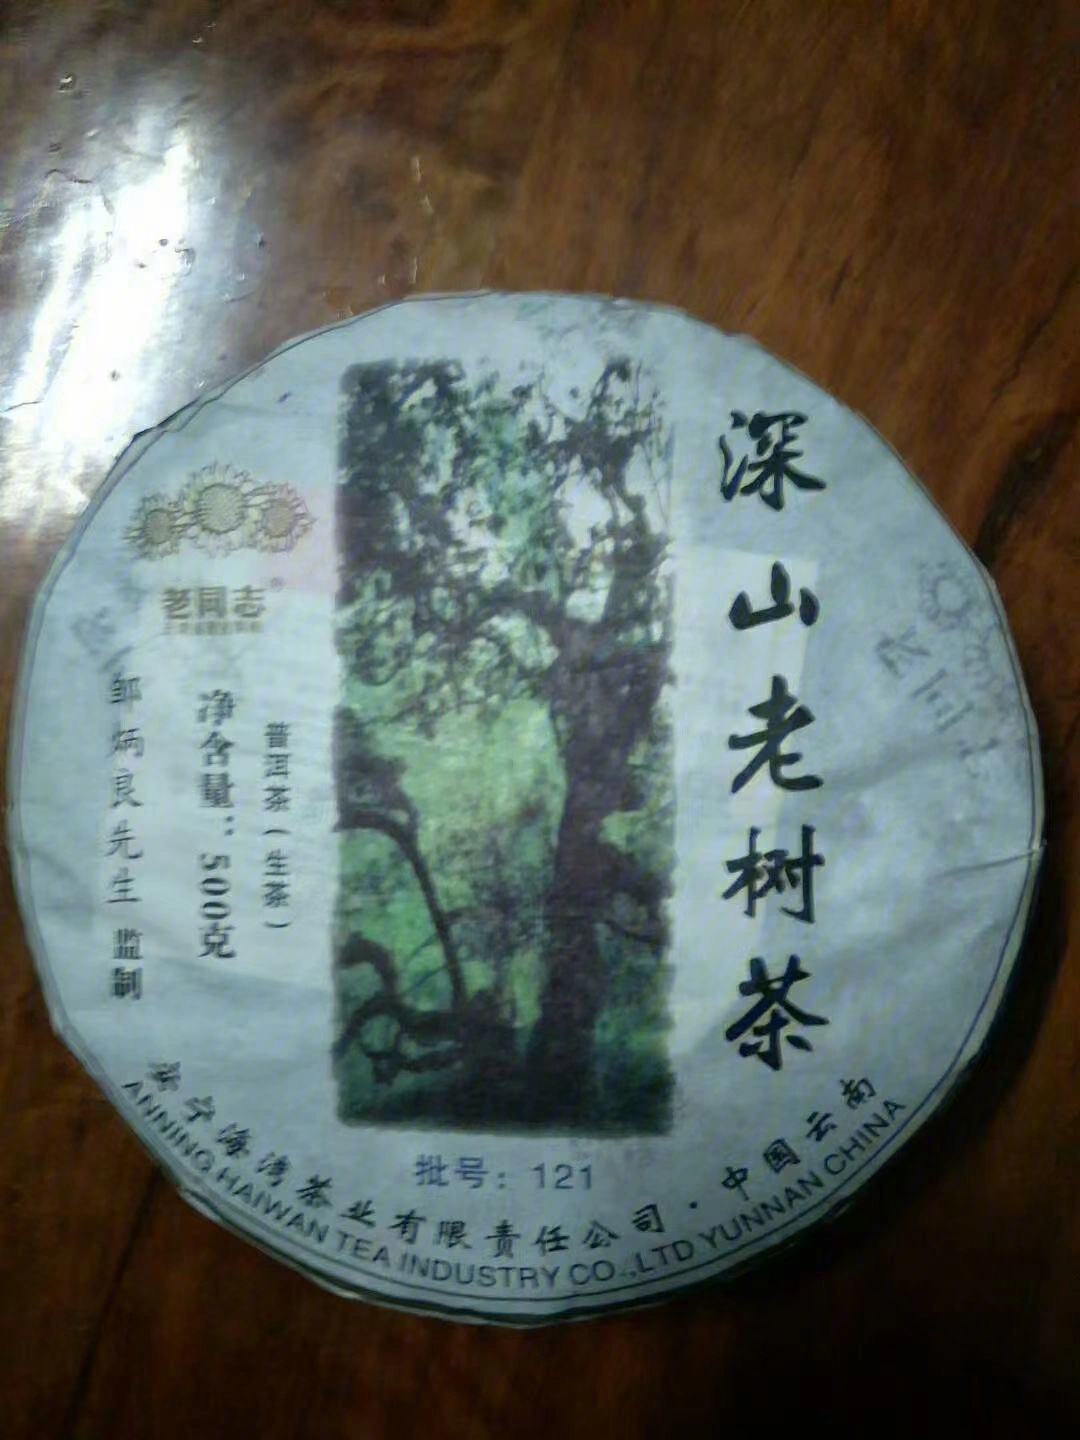 2012年老同志深山老树茶,茶汤入口显优雅自然的蜜兰香